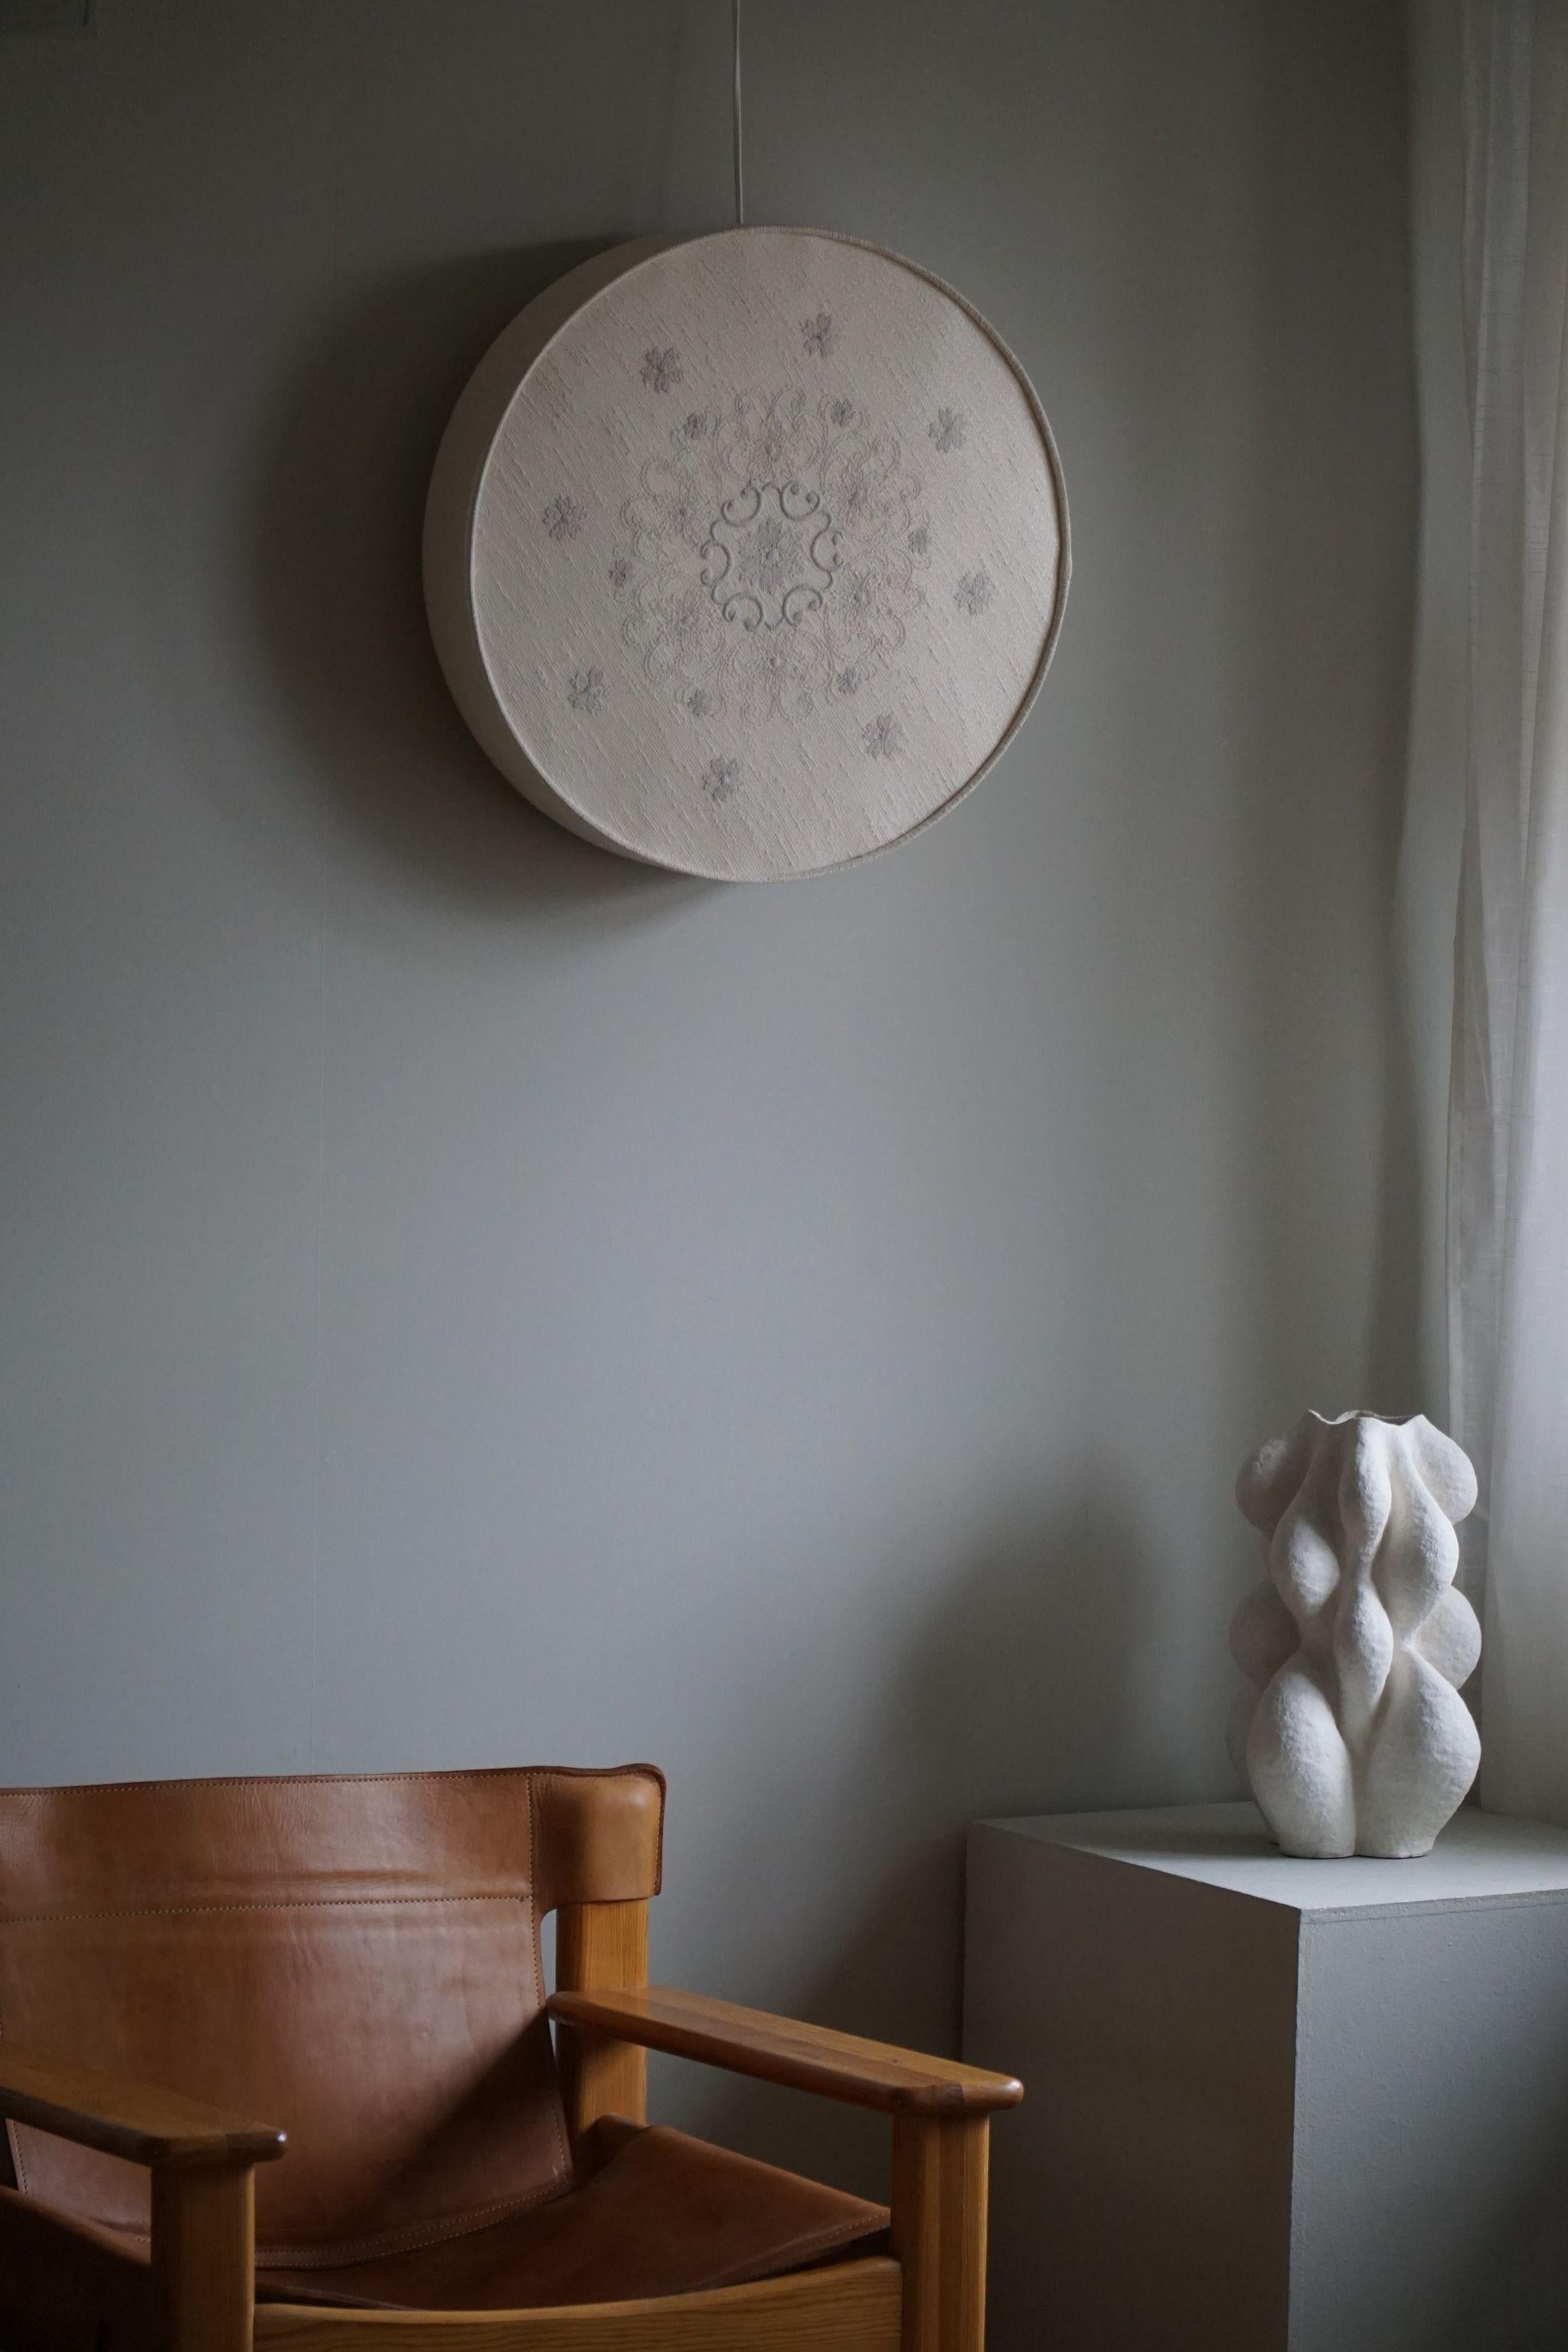 Une belle applique ronde pour plafond/mur en lin et soie. Fabriqué en Suède dans les années 1960, avec un grand sens de l'élégance et de la simplicité caractéristiques de l'ère suédoise du milieu du siècle. Le luminaire présente une forme circulaire